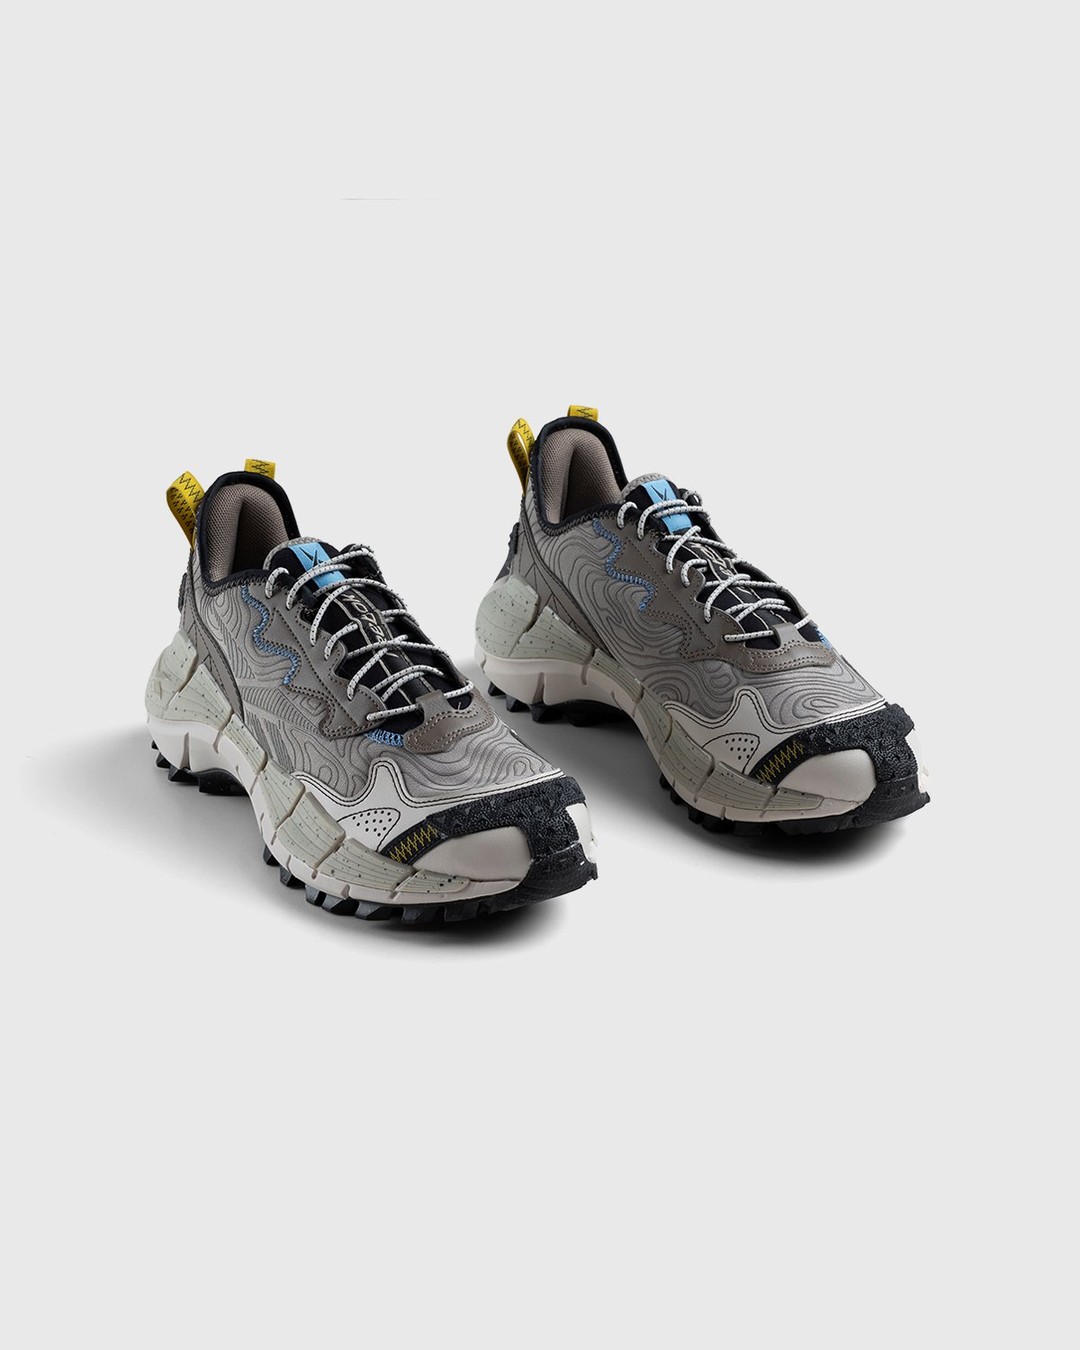 Reebok – Zig Kinetica II Edge Boulder Grey / Essential Blue / Sulfur Green - Low Top Sneakers - Grey - Image 3